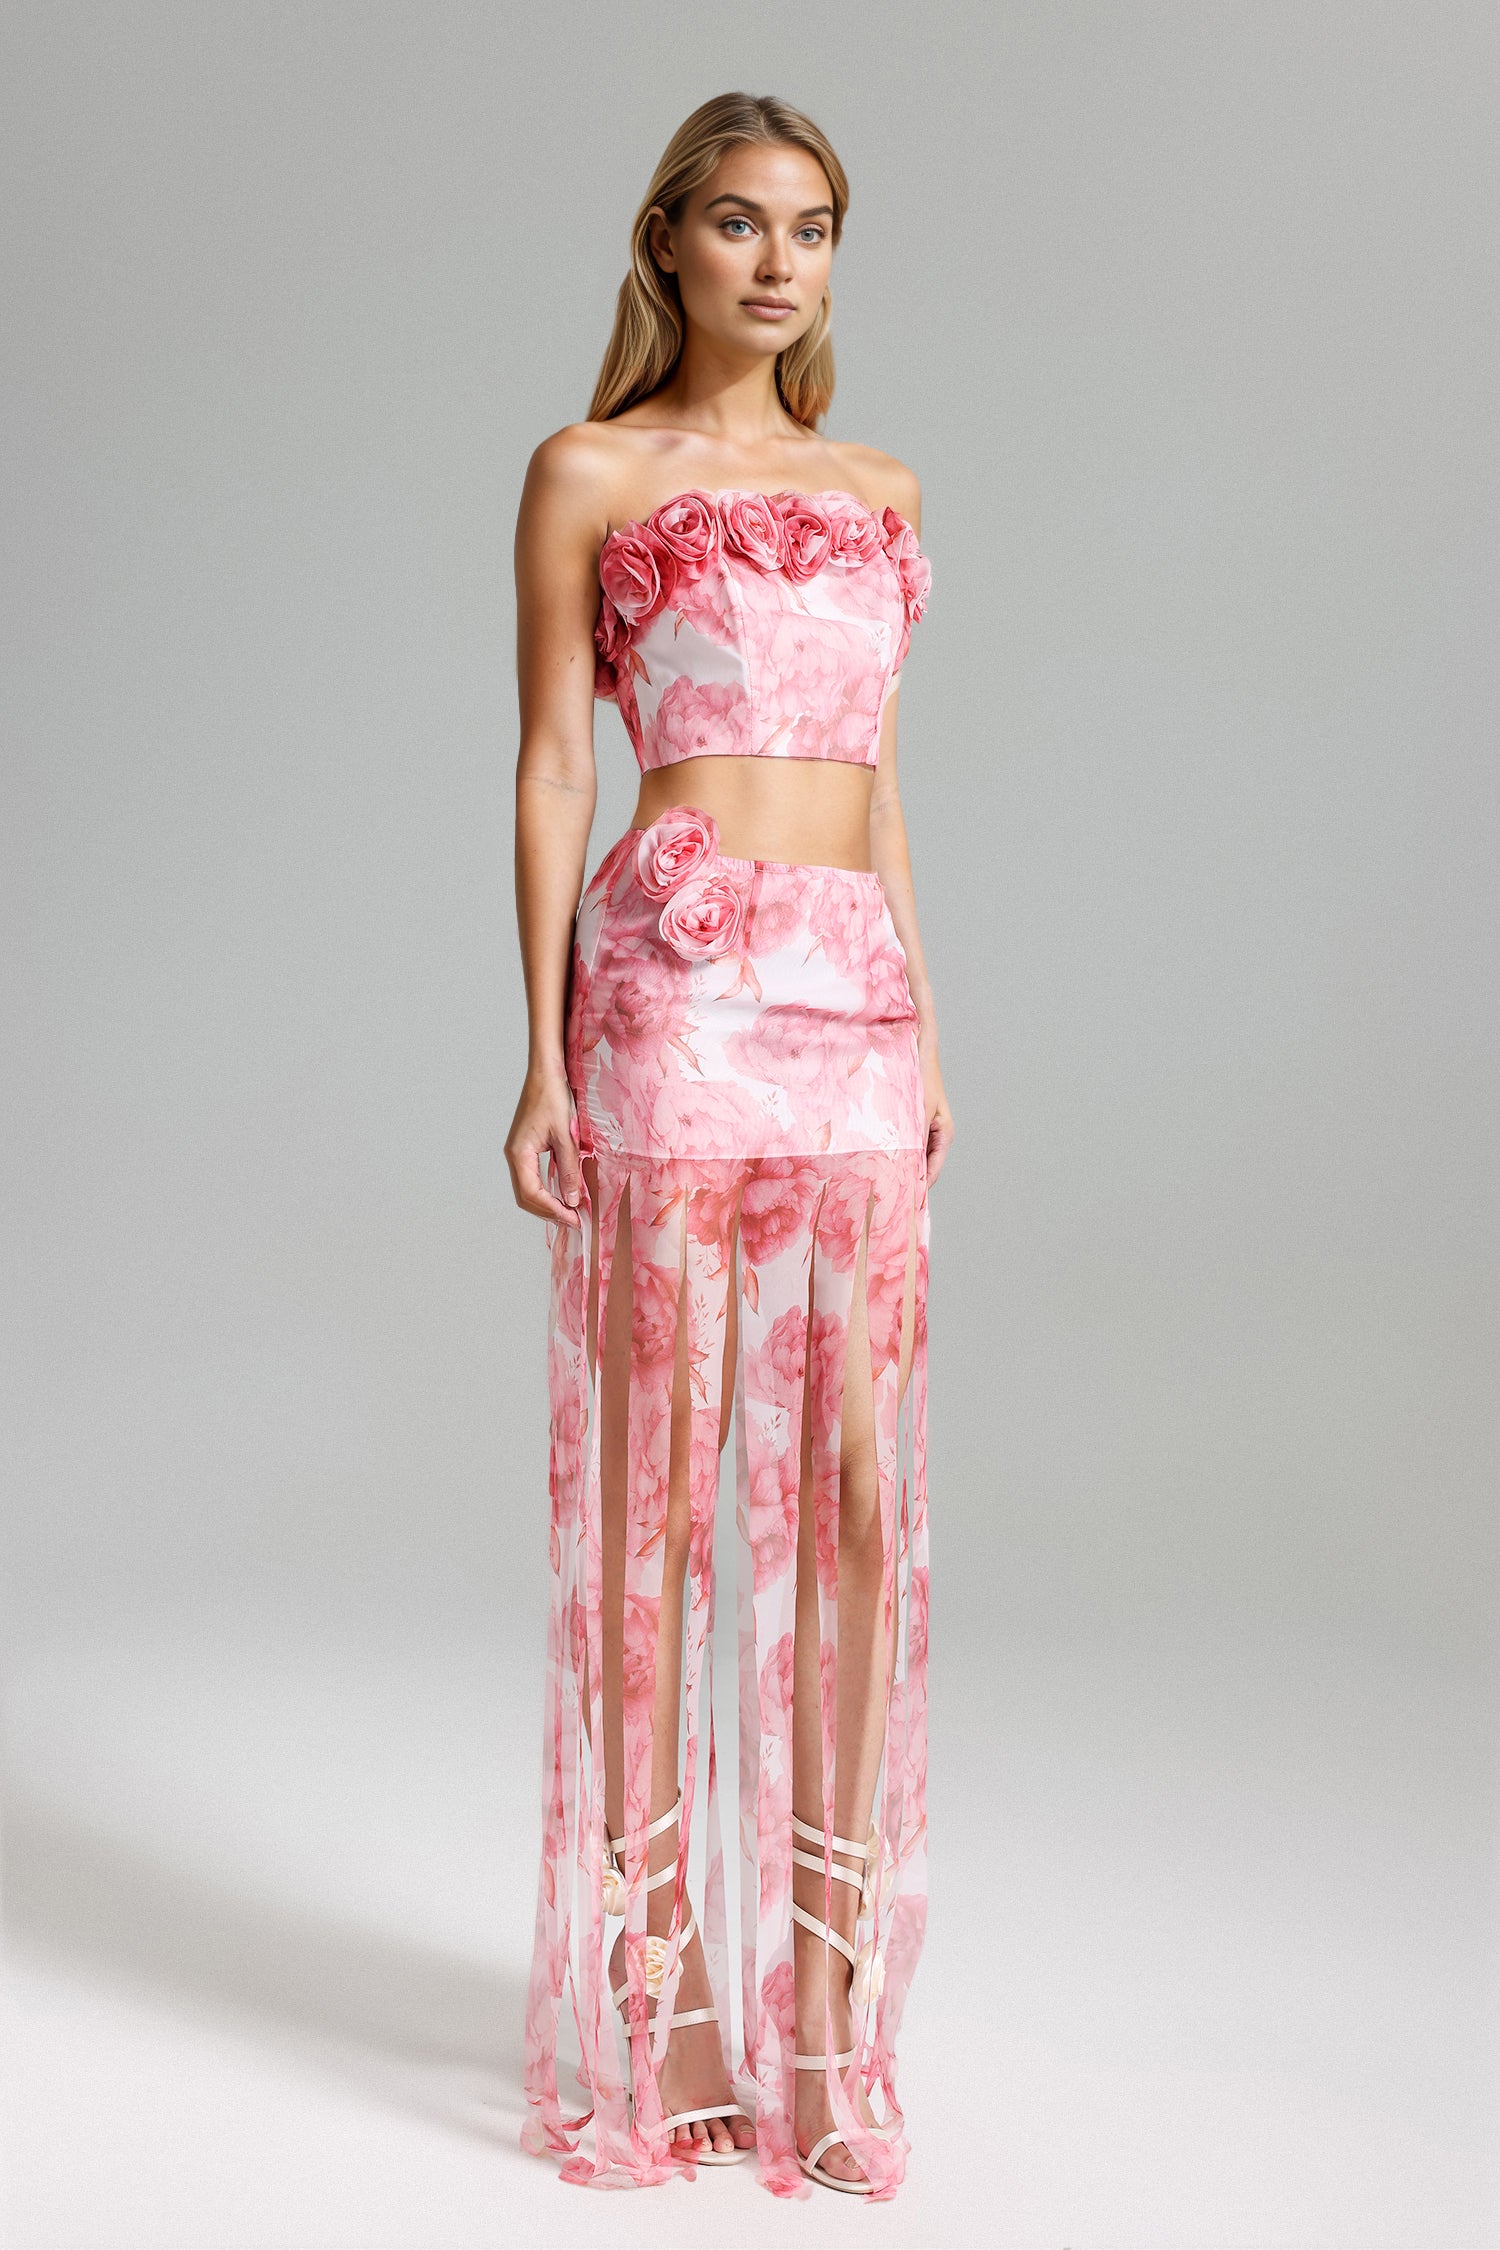 Sparkly Floral Print Top Fringe Skirt Set